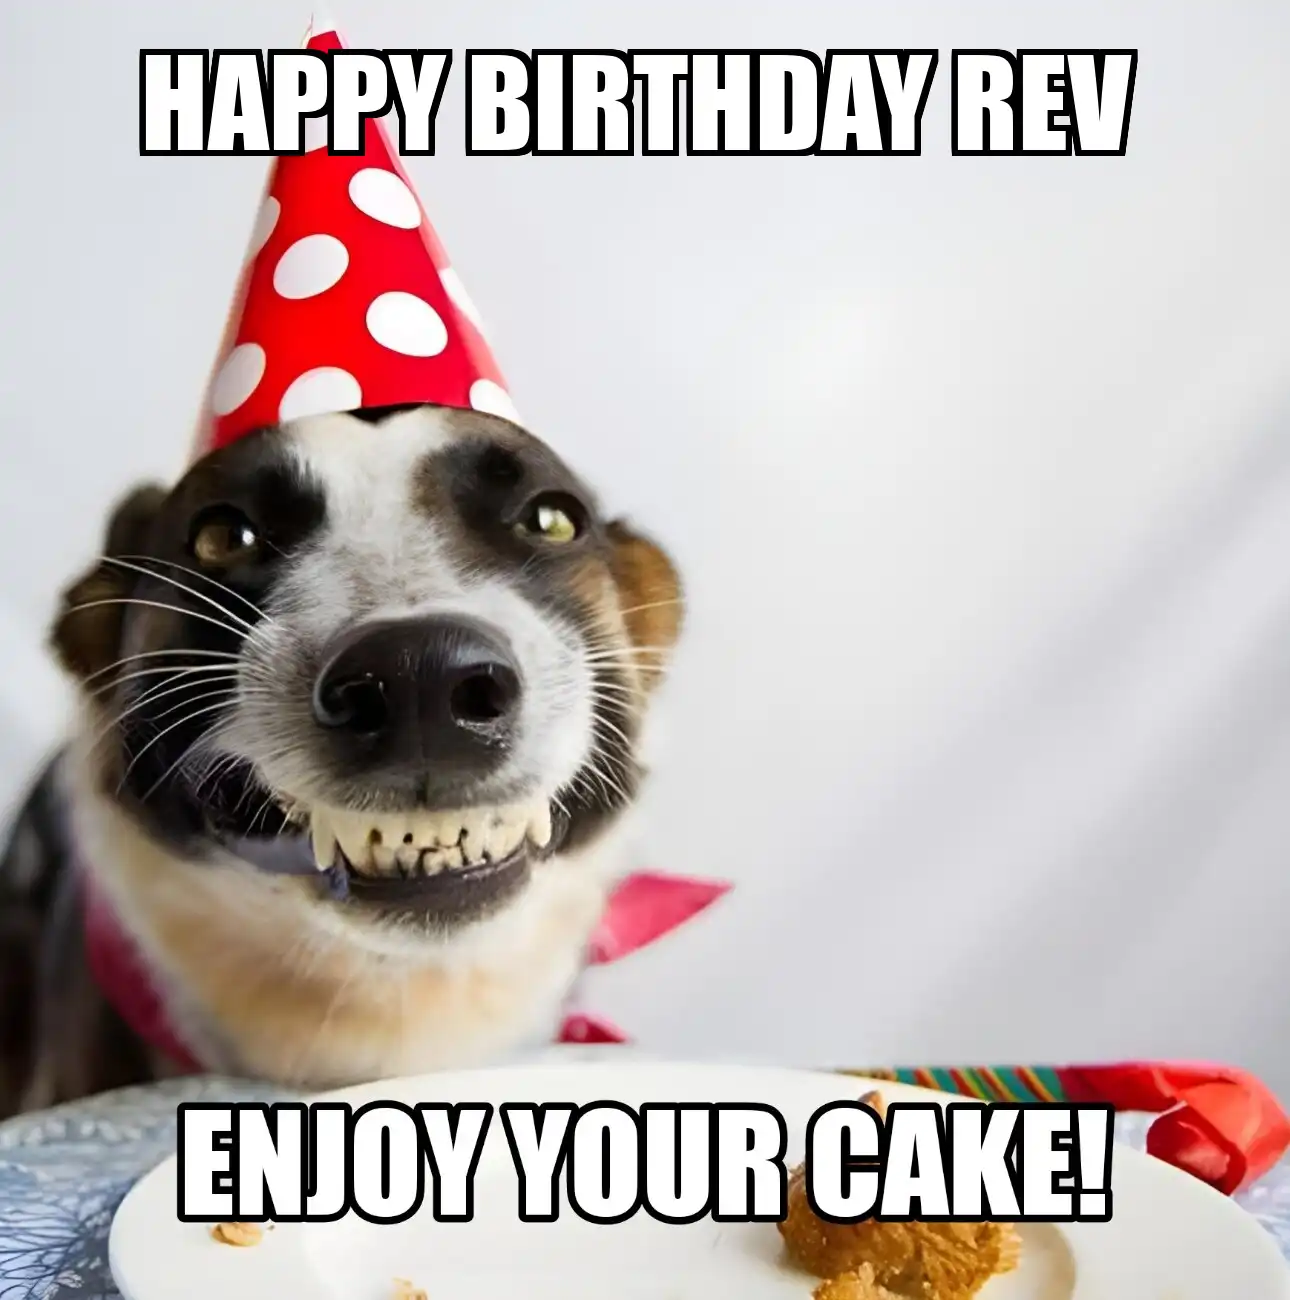 Happy Birthday Rev Enjoy Your Cake Dog Meme